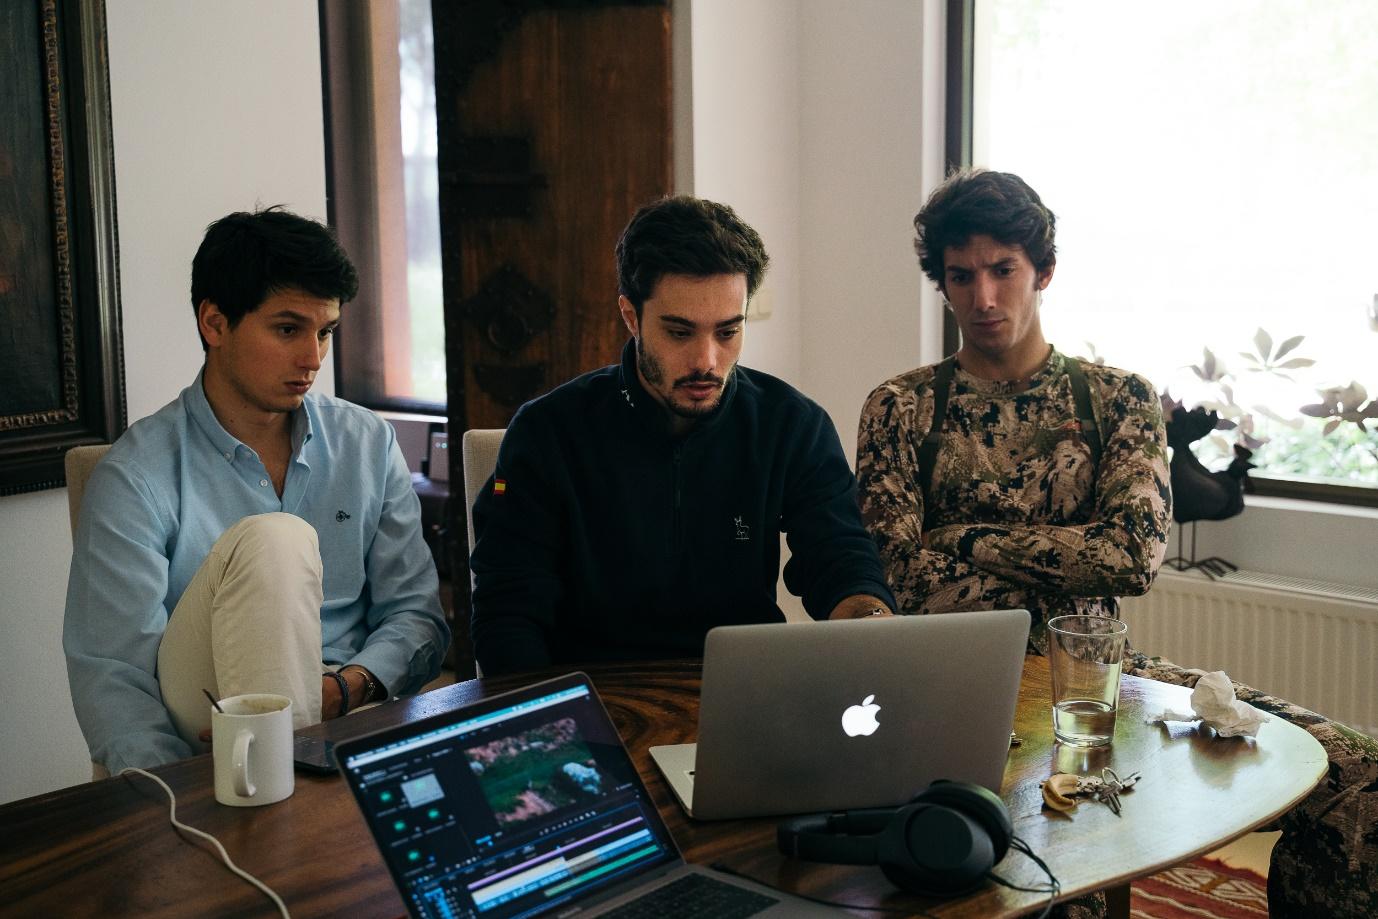 Un grupo de personas frente a una mesa con una computadora

Descripción generada automáticamente